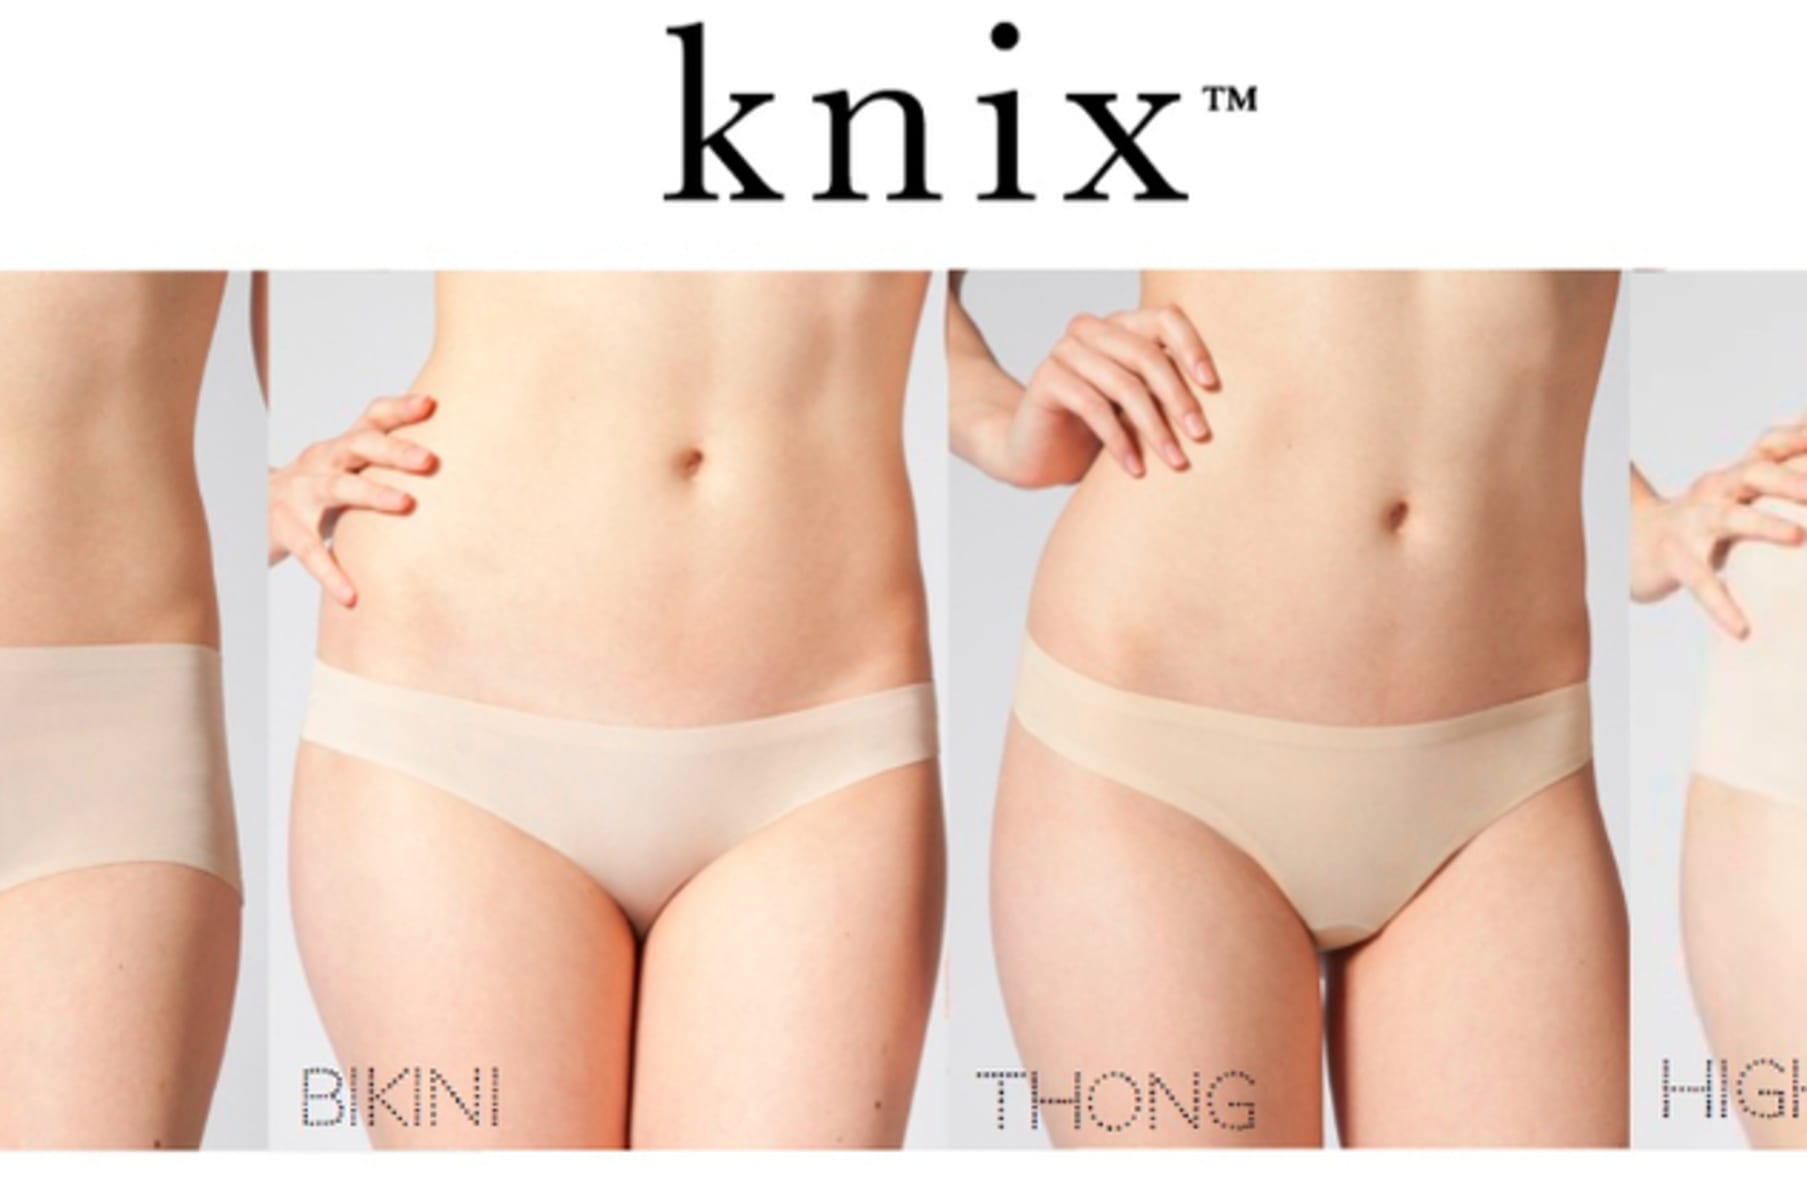 Knix Wear: High-tech, multi-tasking underwear